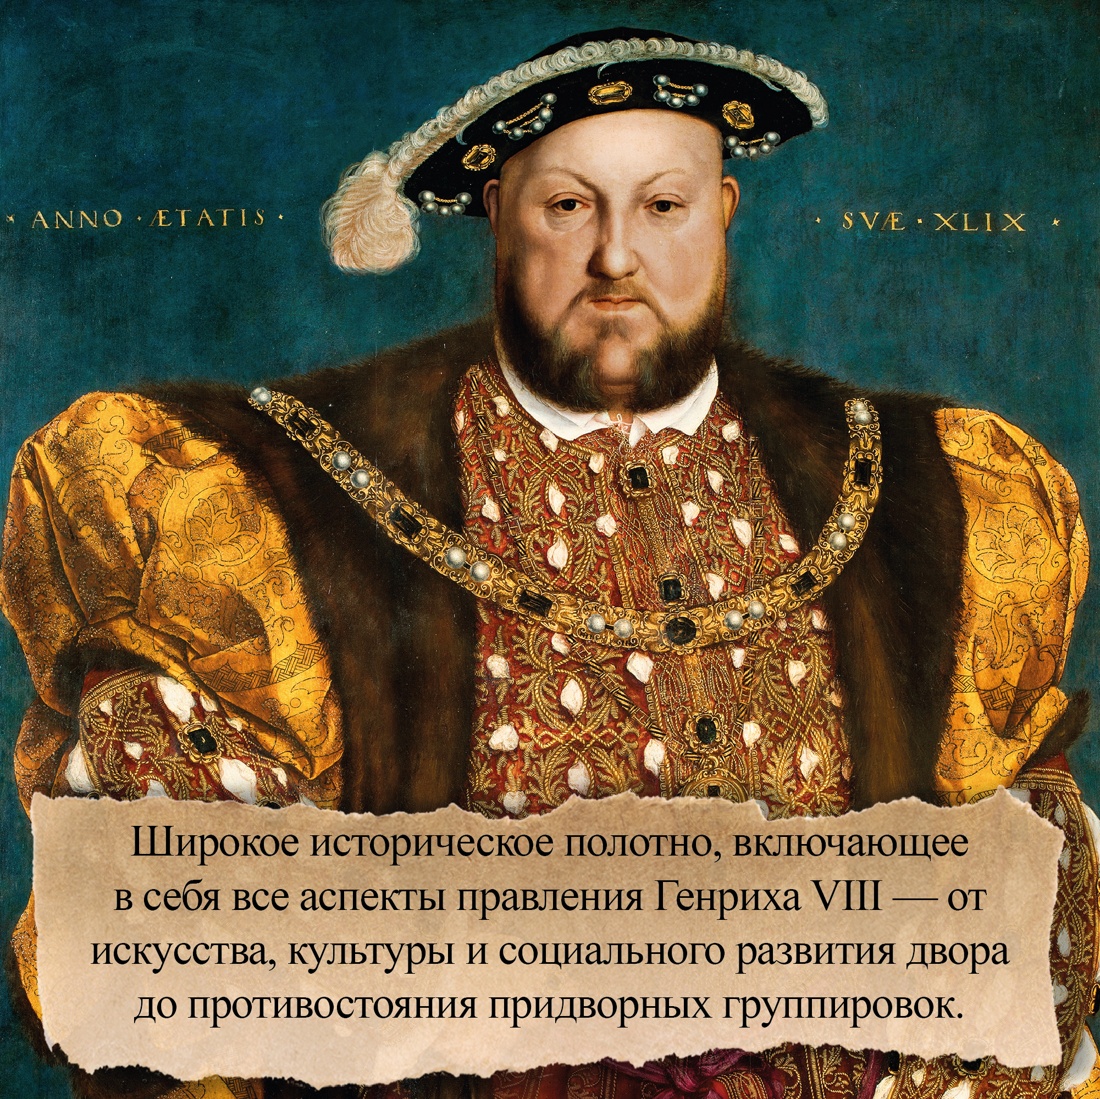 Промо материал к книге "Генрих VIII. Жизнь королевского двора" №2